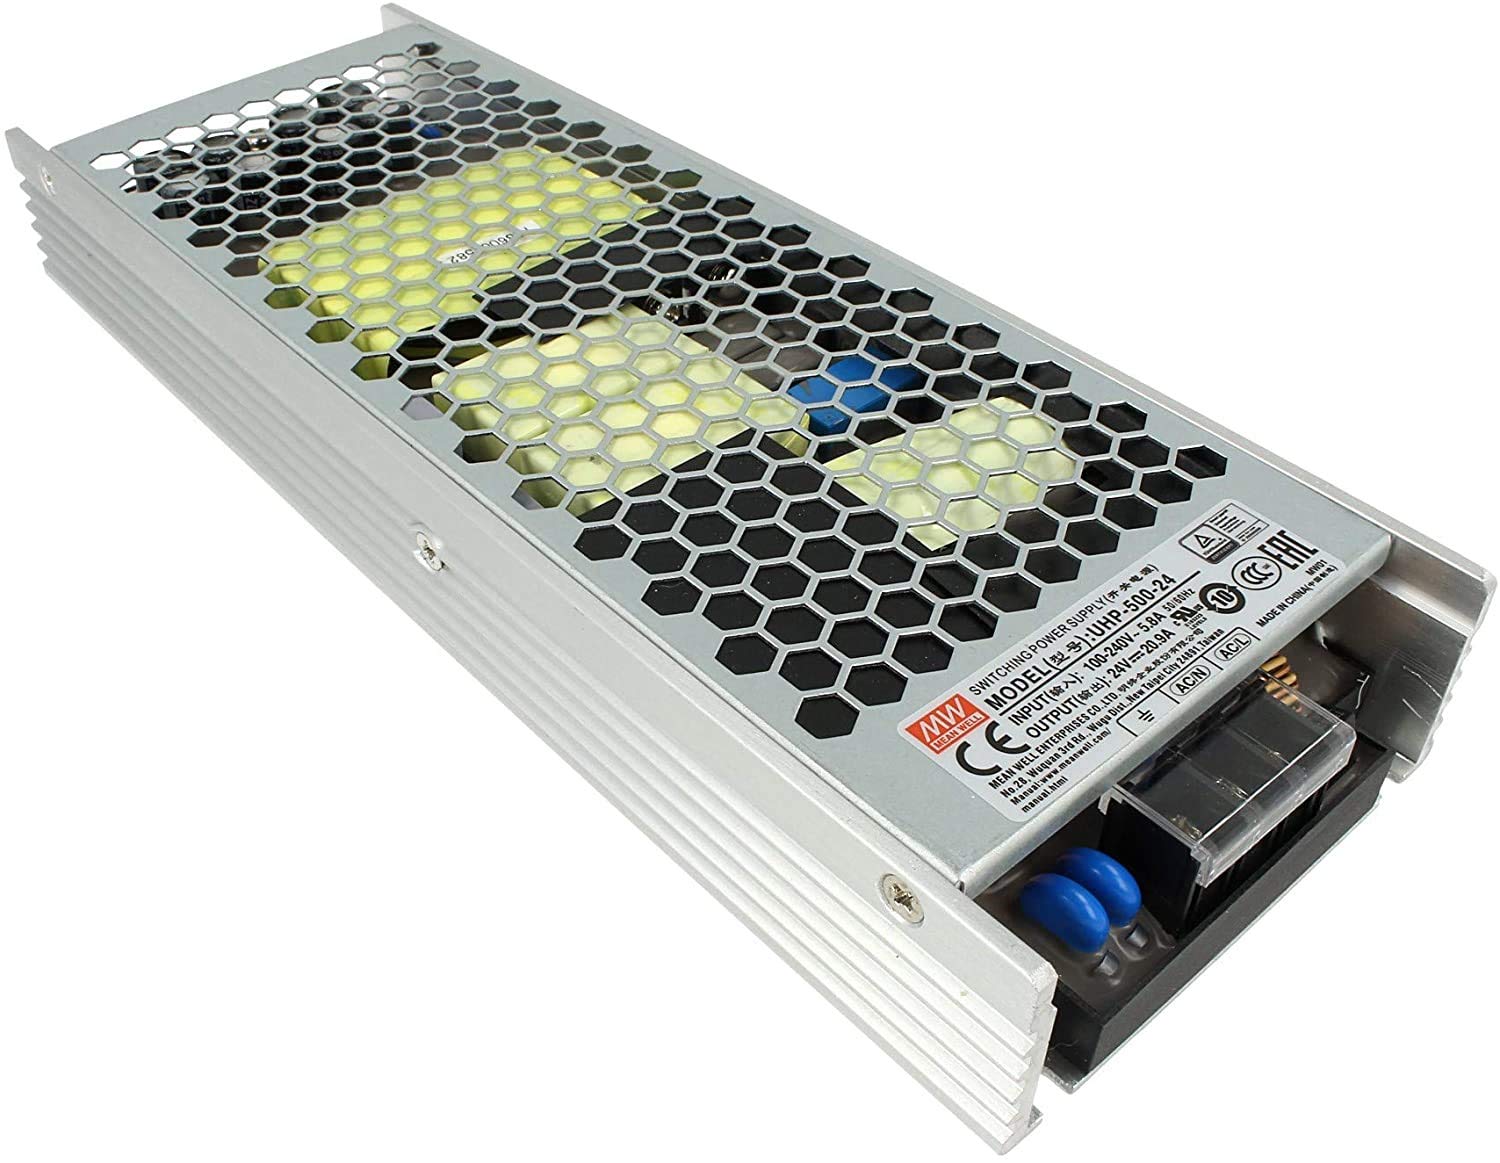 MeanWell UHP-500-24, Netzteil CV 24 V, 500 W, 20,9 A, ohne Lüfter, Transformator von AC 220 V auf DC 24 V für LED-Leuchten im Innenbereich